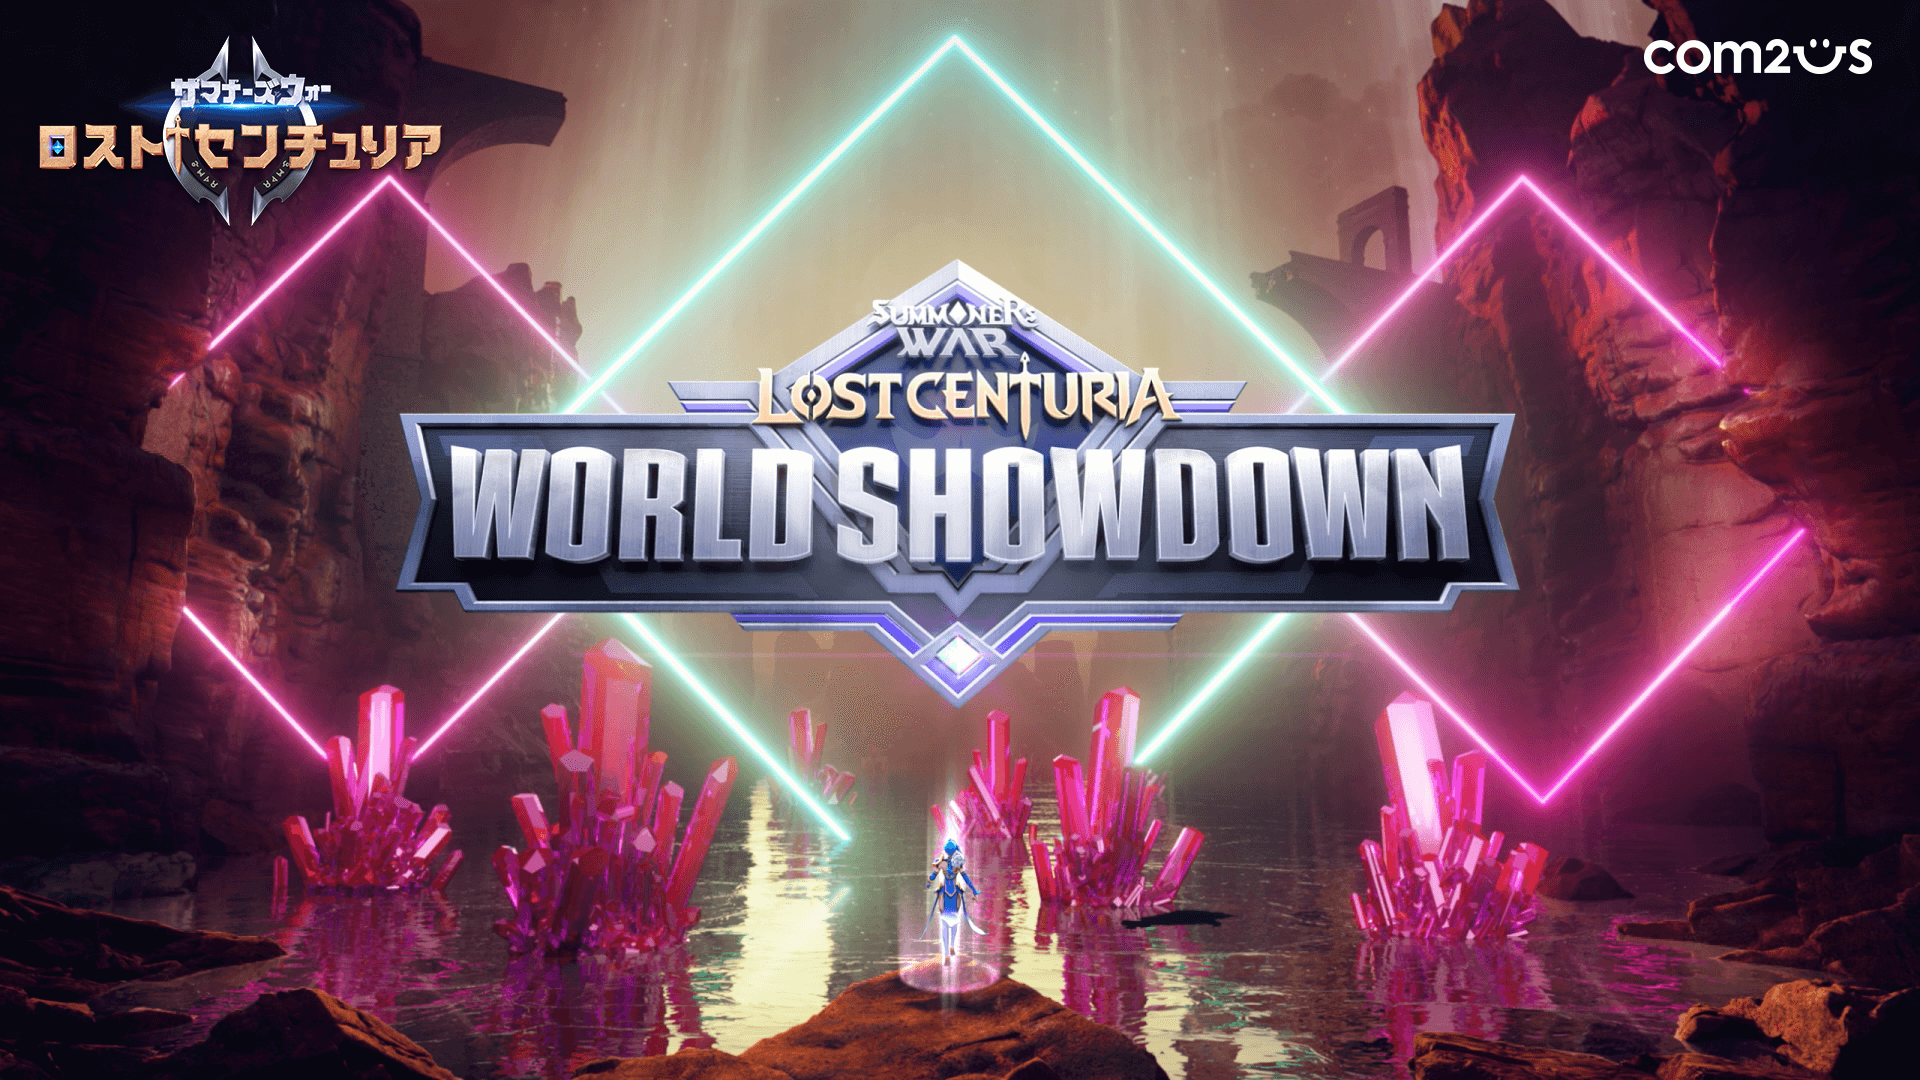 サマナーズウォー ロストセンチュリア 世界大会 Lost Centuria World Showdown プロモーション映像を公開 Gamevil Com2us Japanのプレスリリース